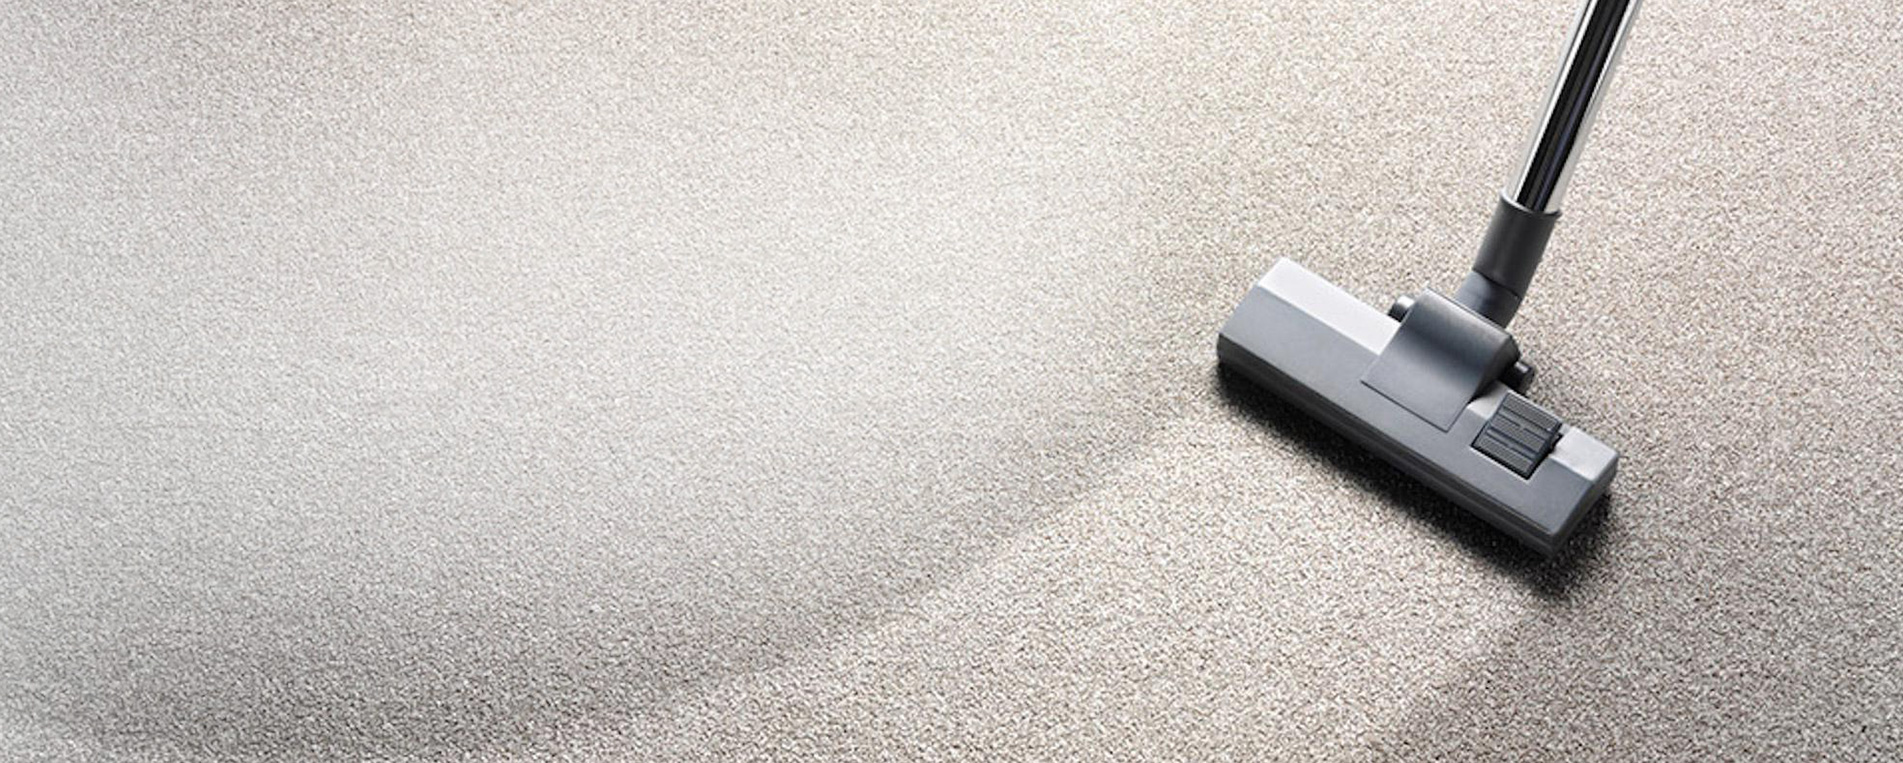 Secrets for Efficient Carpet Cleaning